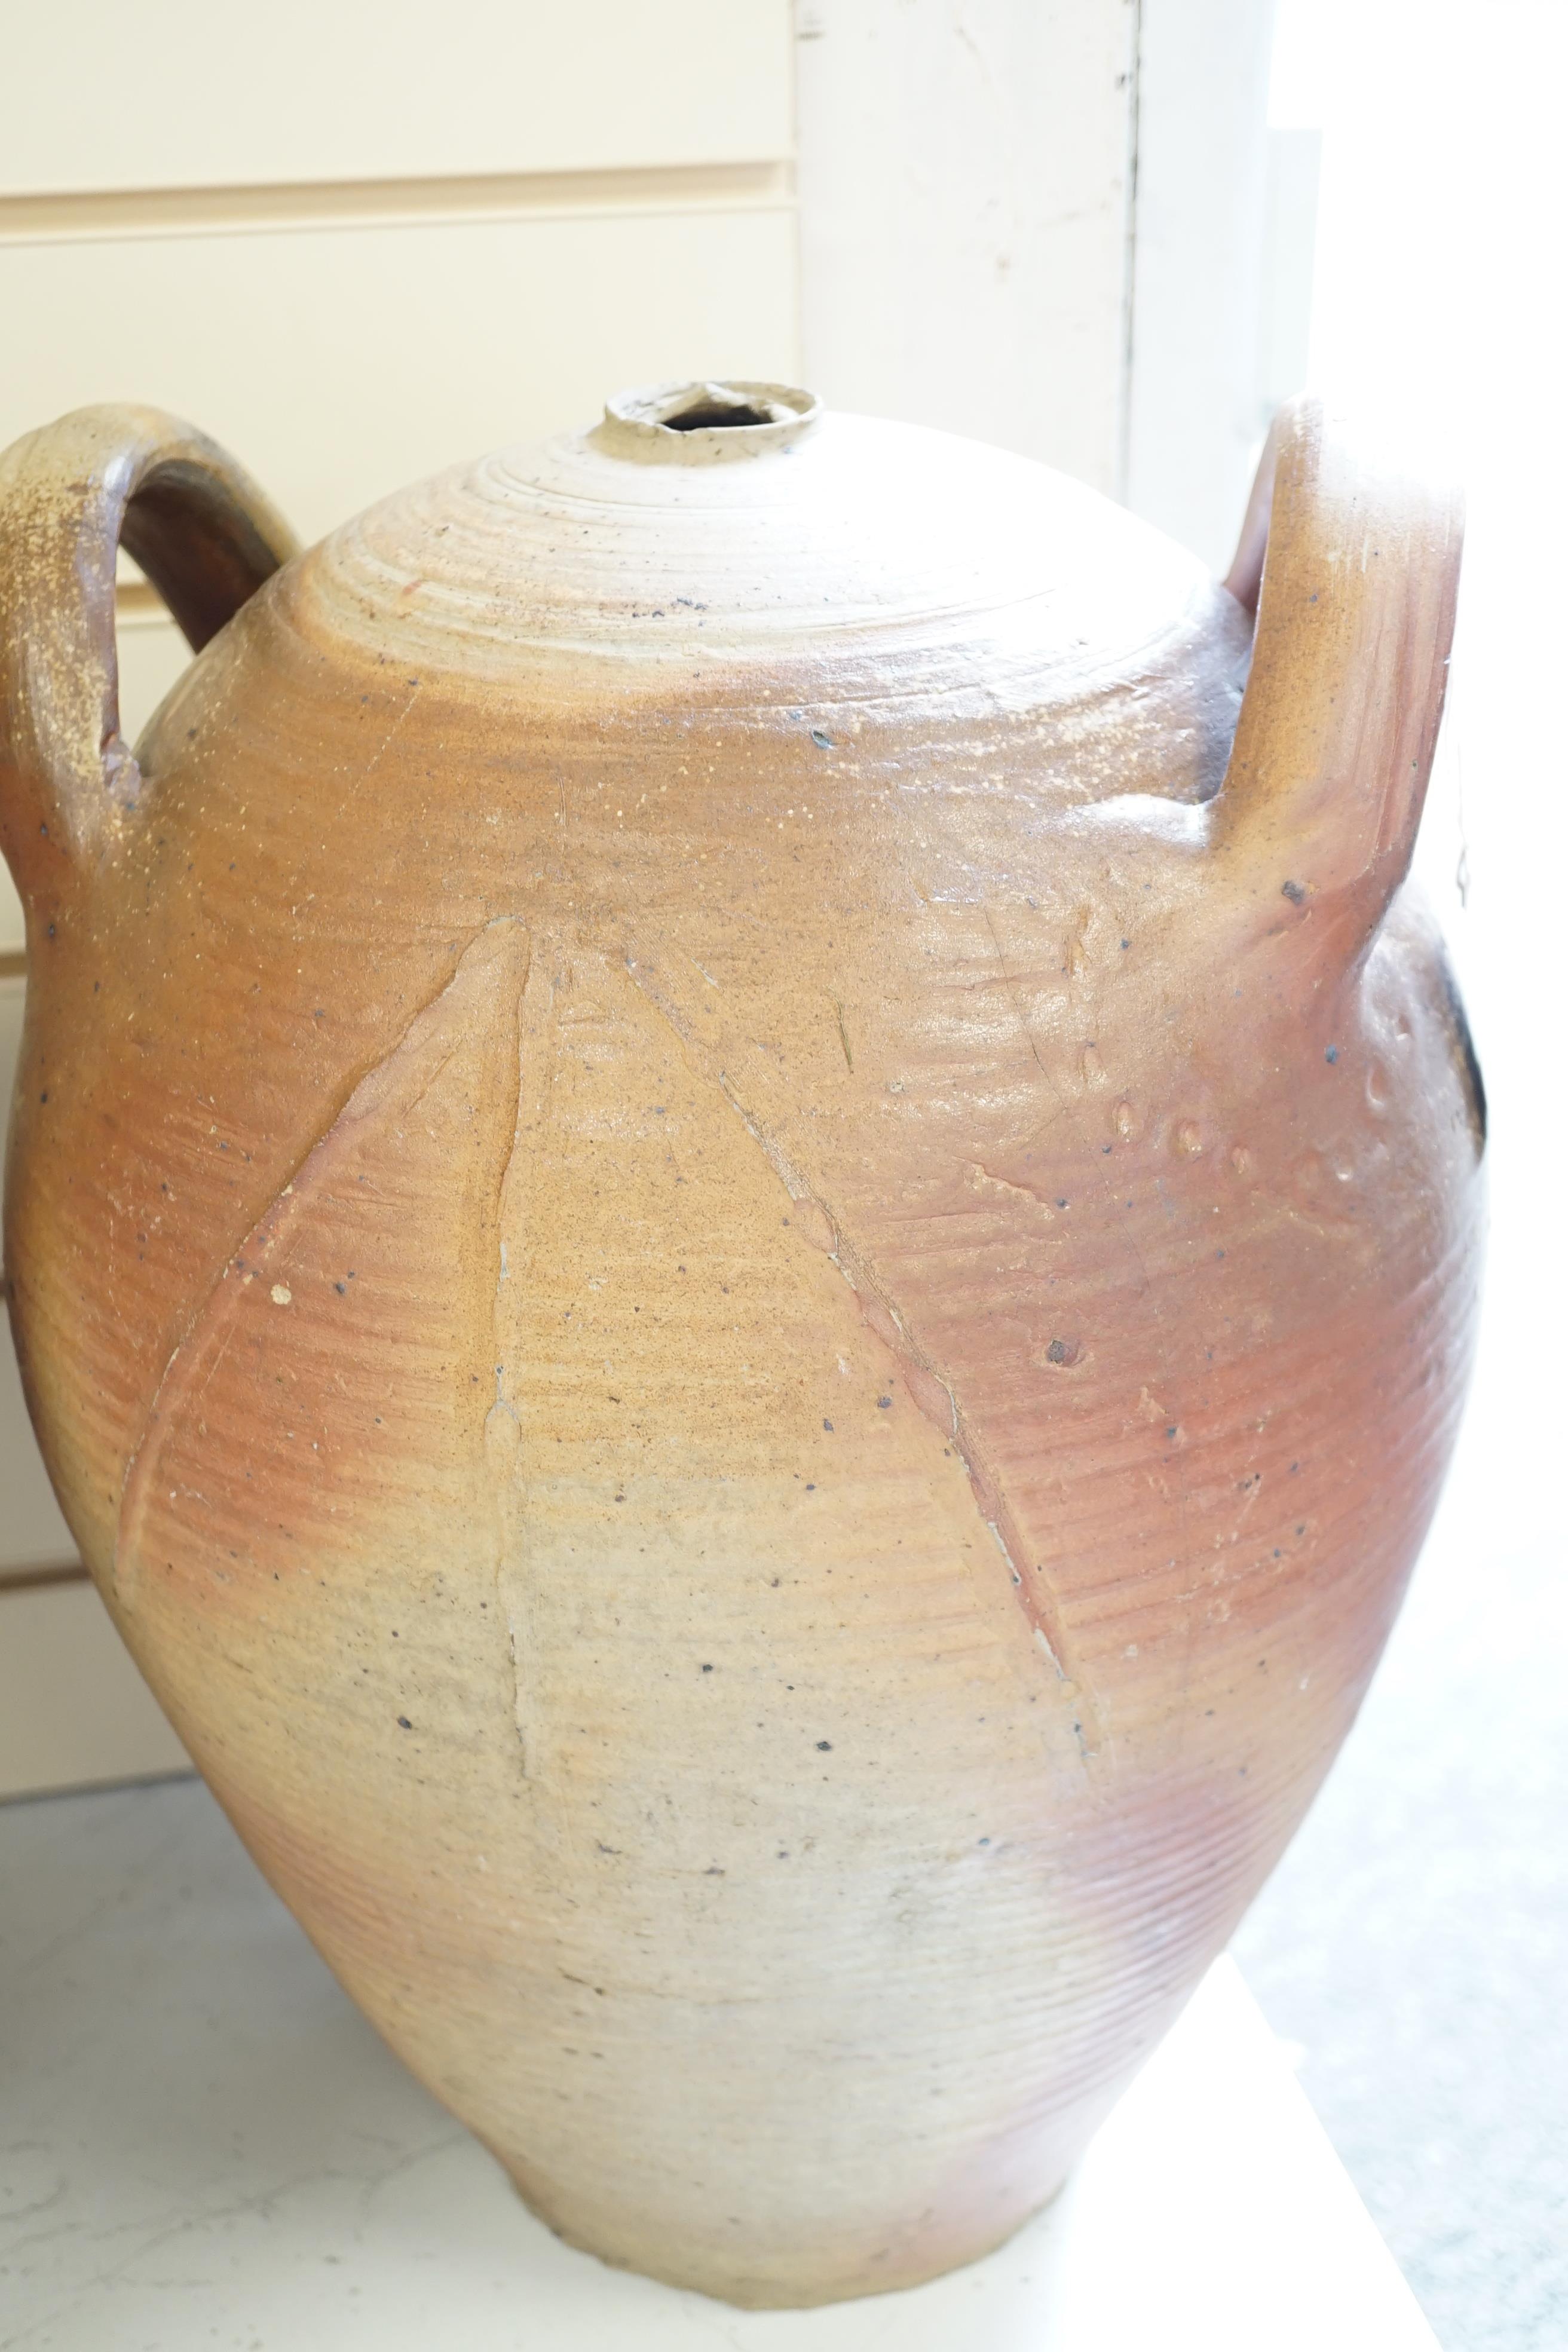 Two terracotta oil jars, tallest 49cm